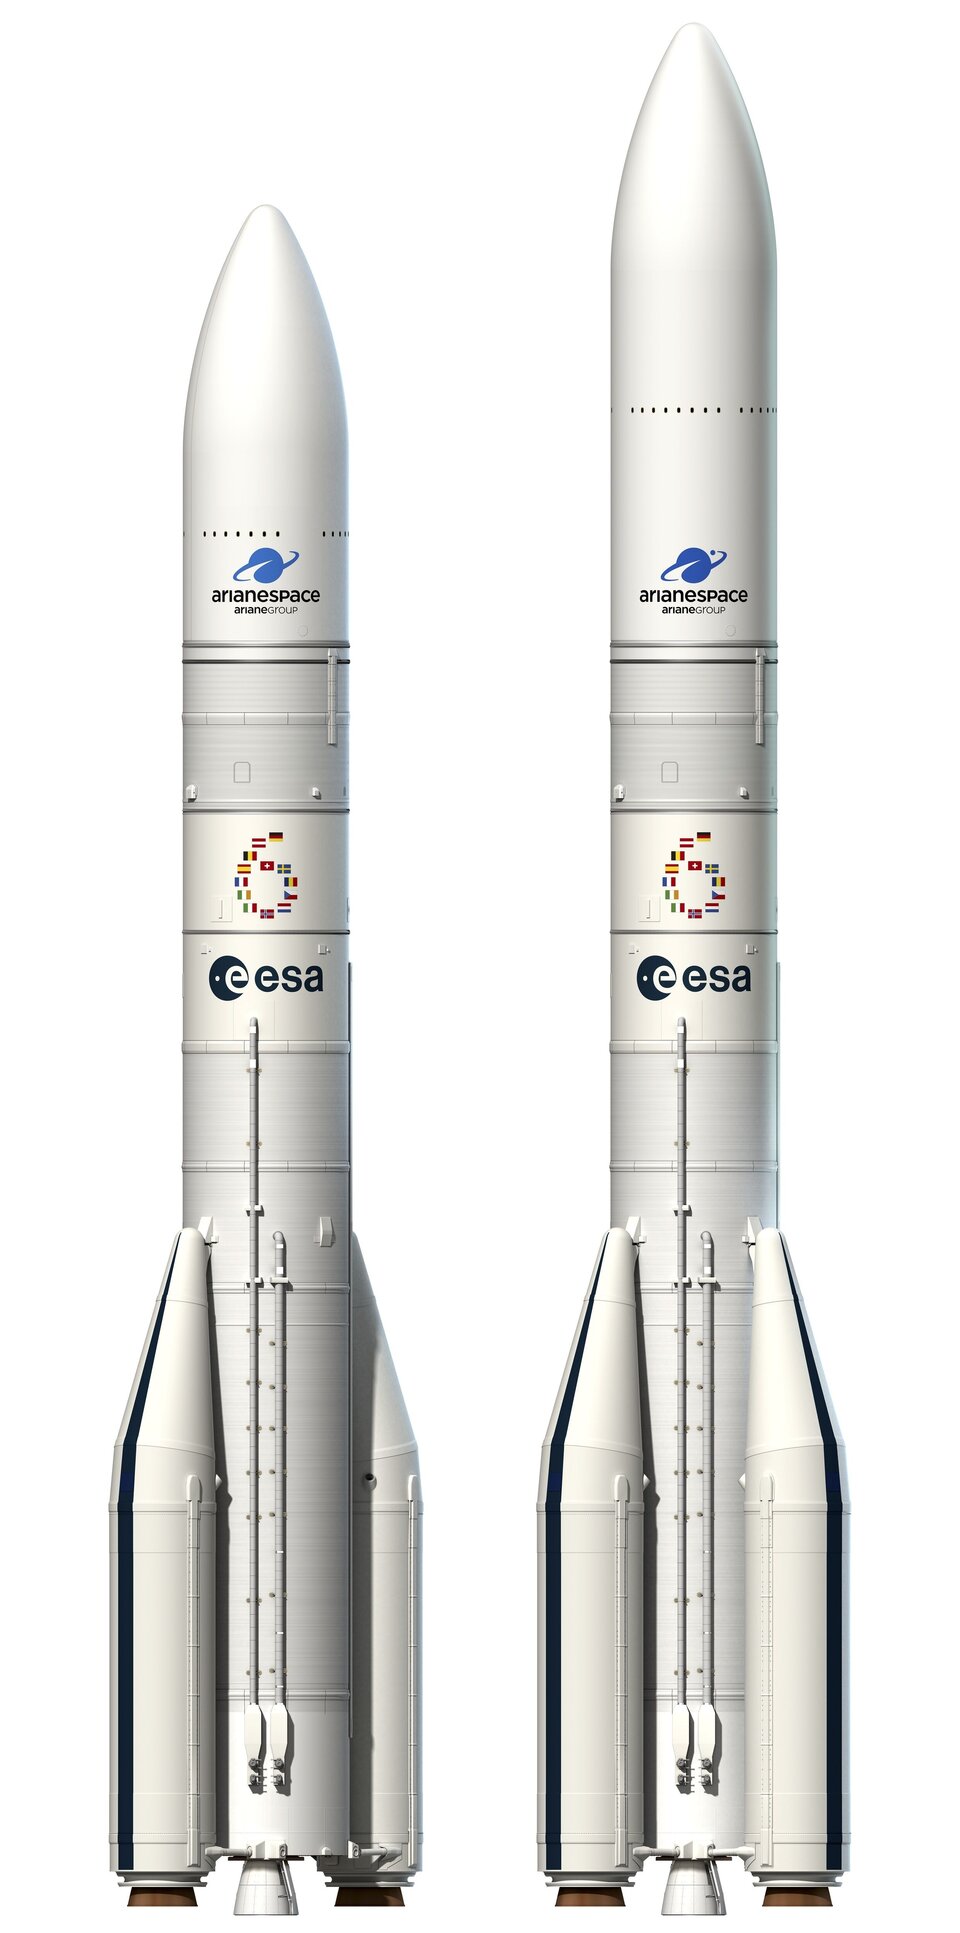 Die Ariane-6 gibt es in zwei verschiedenen Konfigurationen 